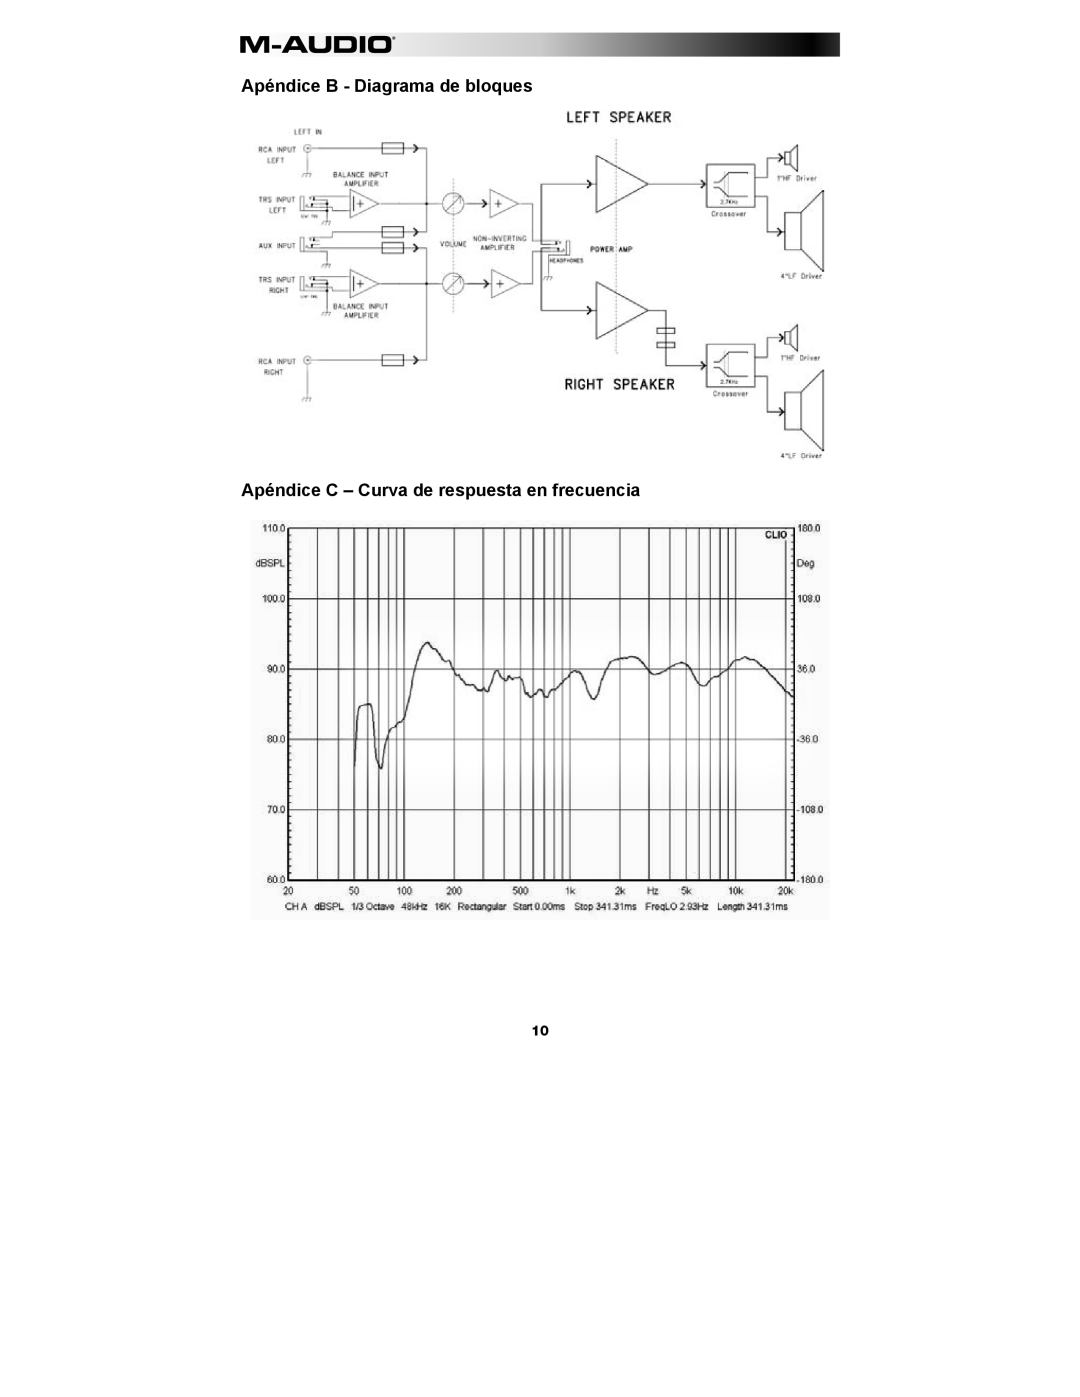 M-Audio AV 40 manual Apéndice B - Diagrama de bloques, Apéndice C - Curva de respuesta en frecuencia 